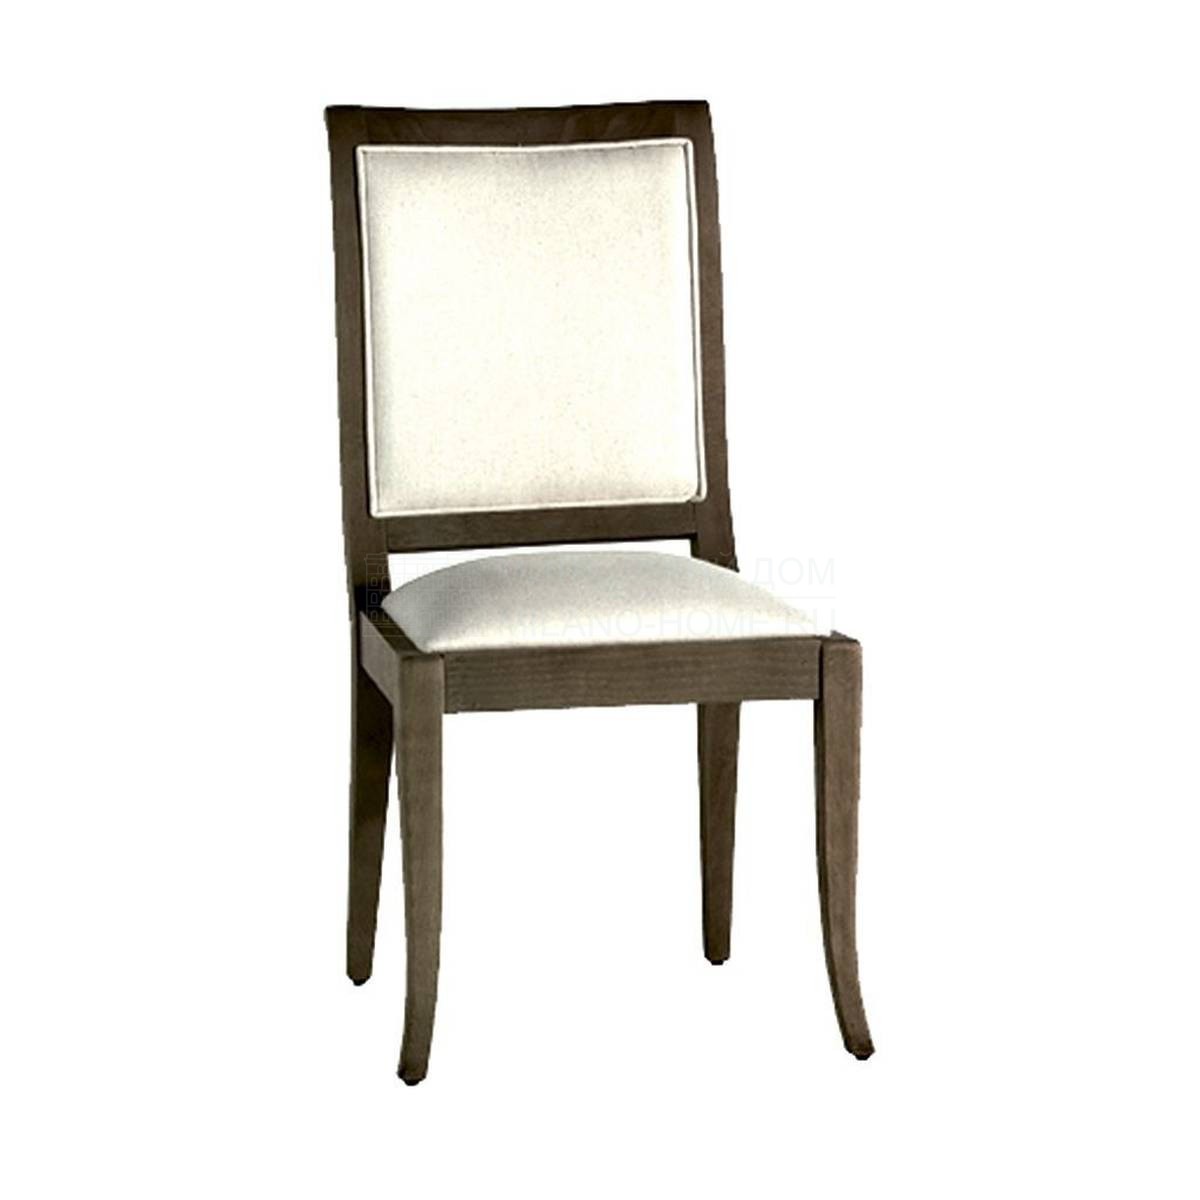 Стул M-3354 chair из Испании фабрики GUADARTE